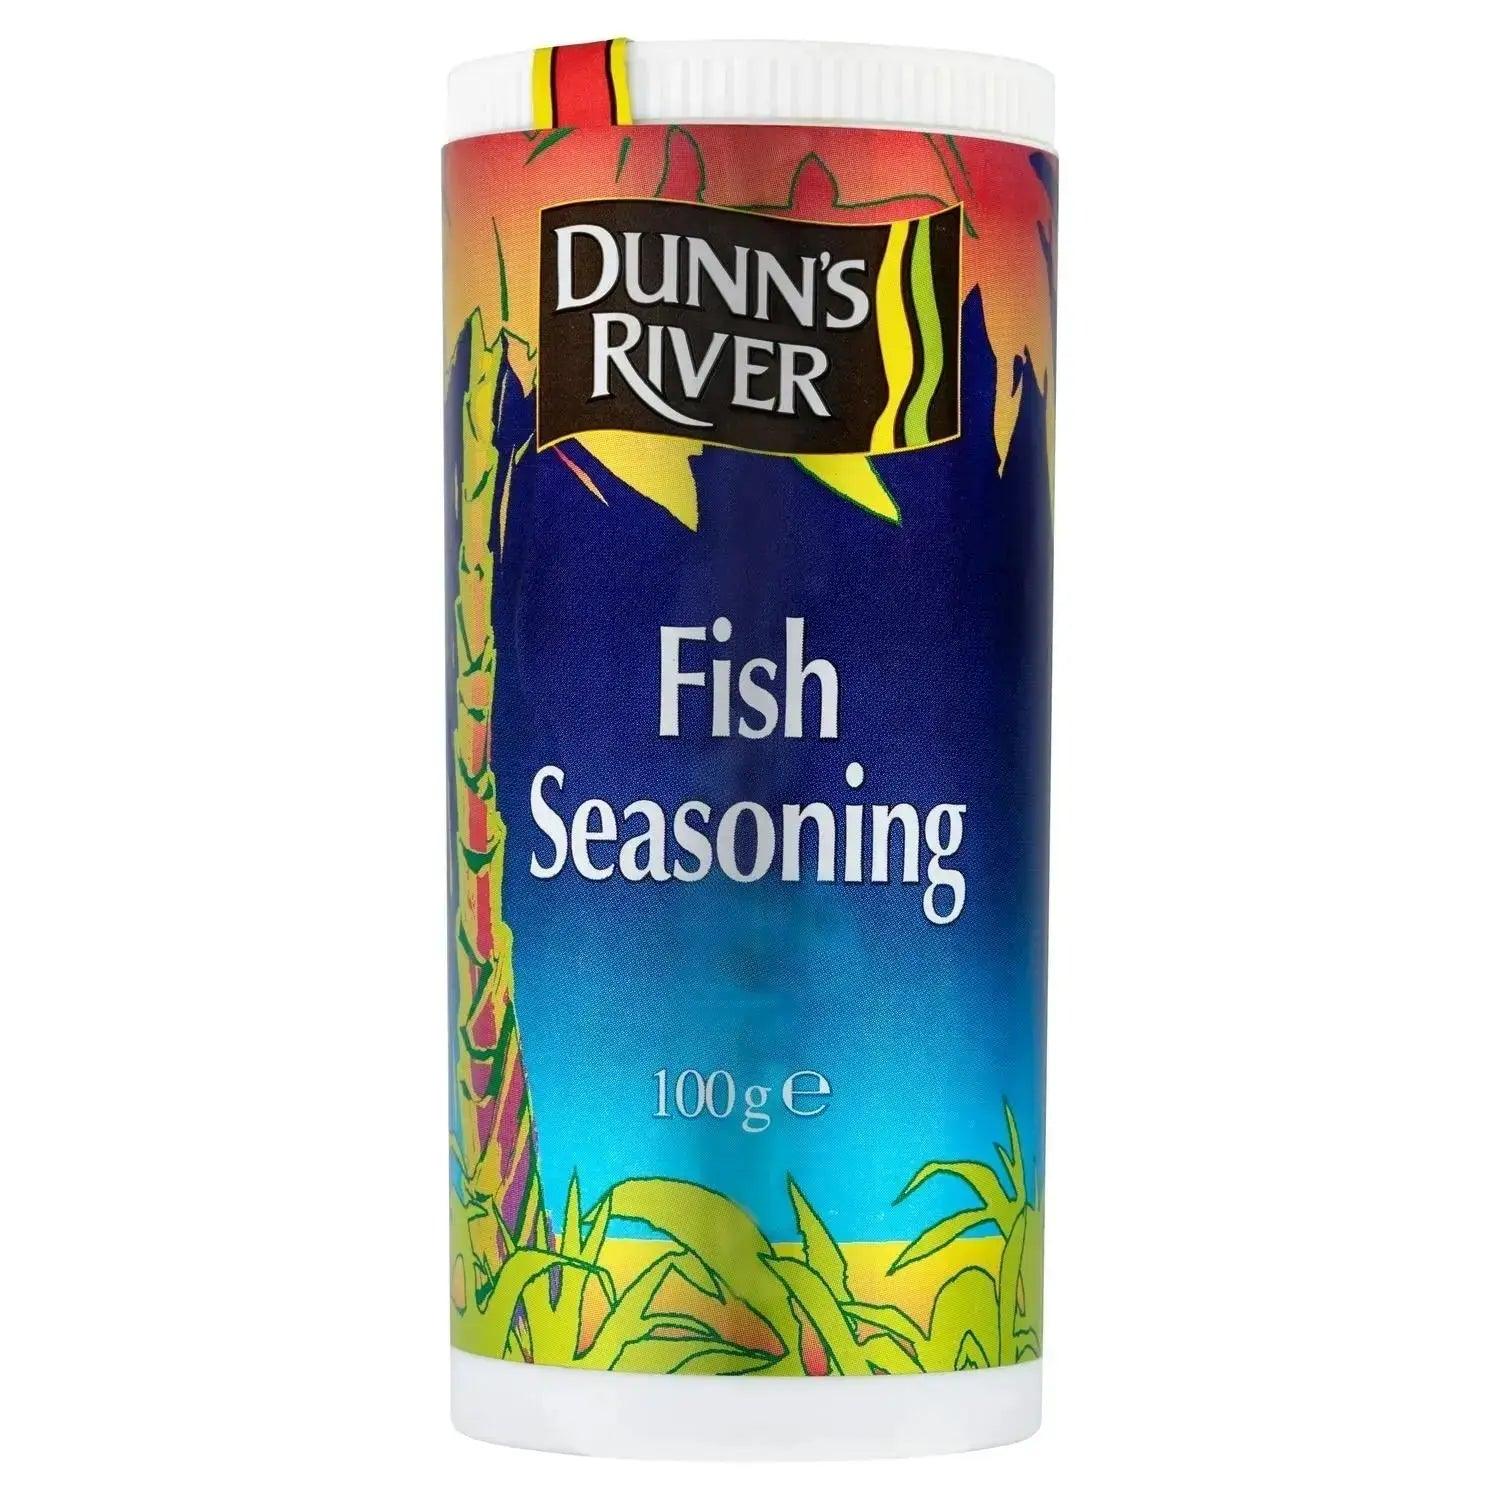 Dunns’ River Fish Seasoning 100g (12 Pcs in Case) - Honesty Sales U.K